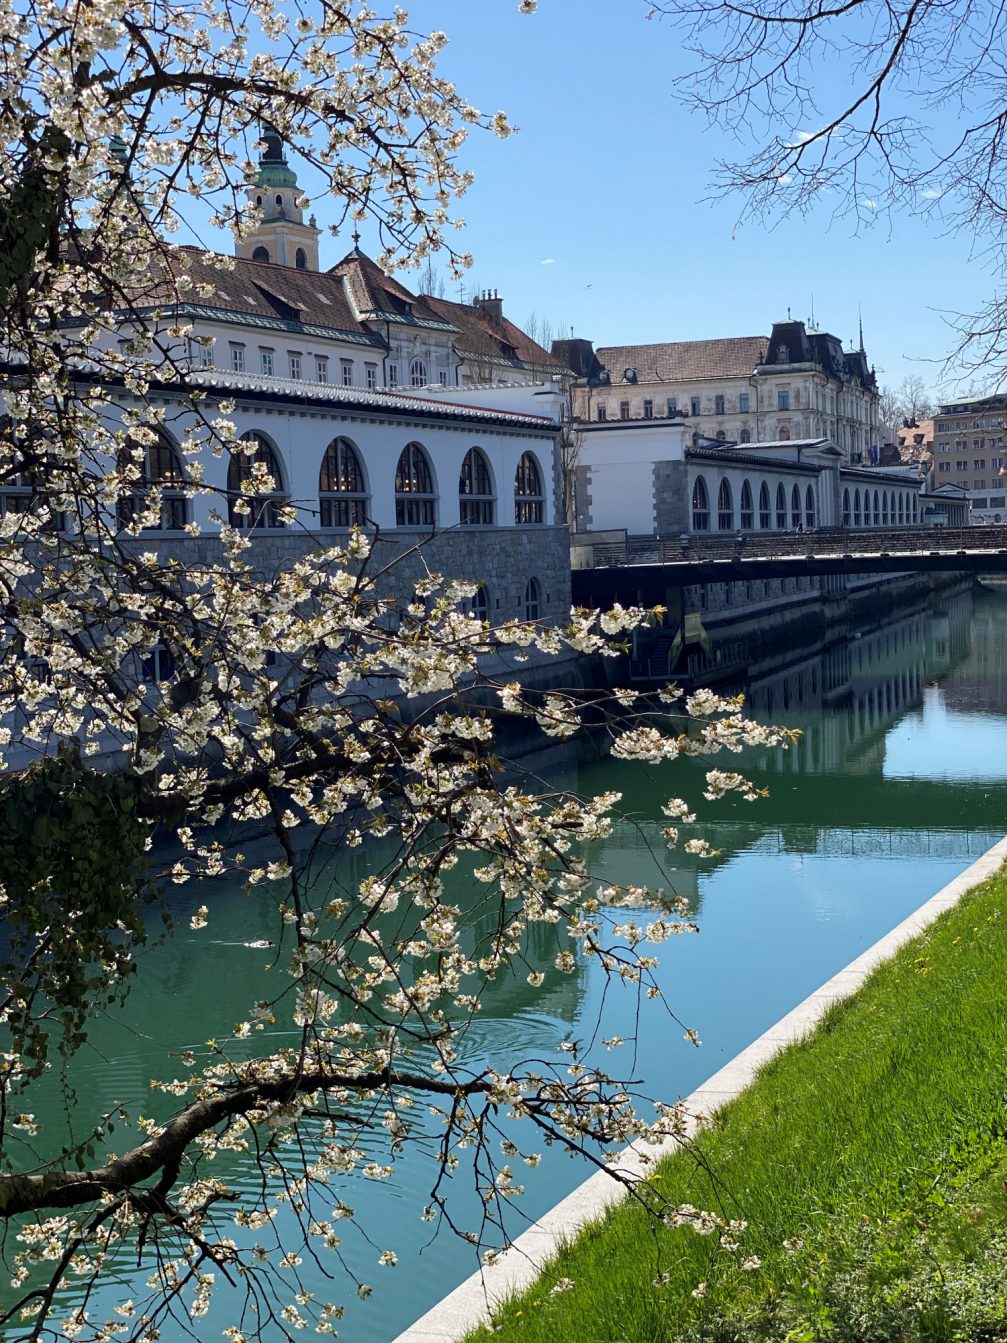 Ljubljana, the capital of Slovenia in early spring